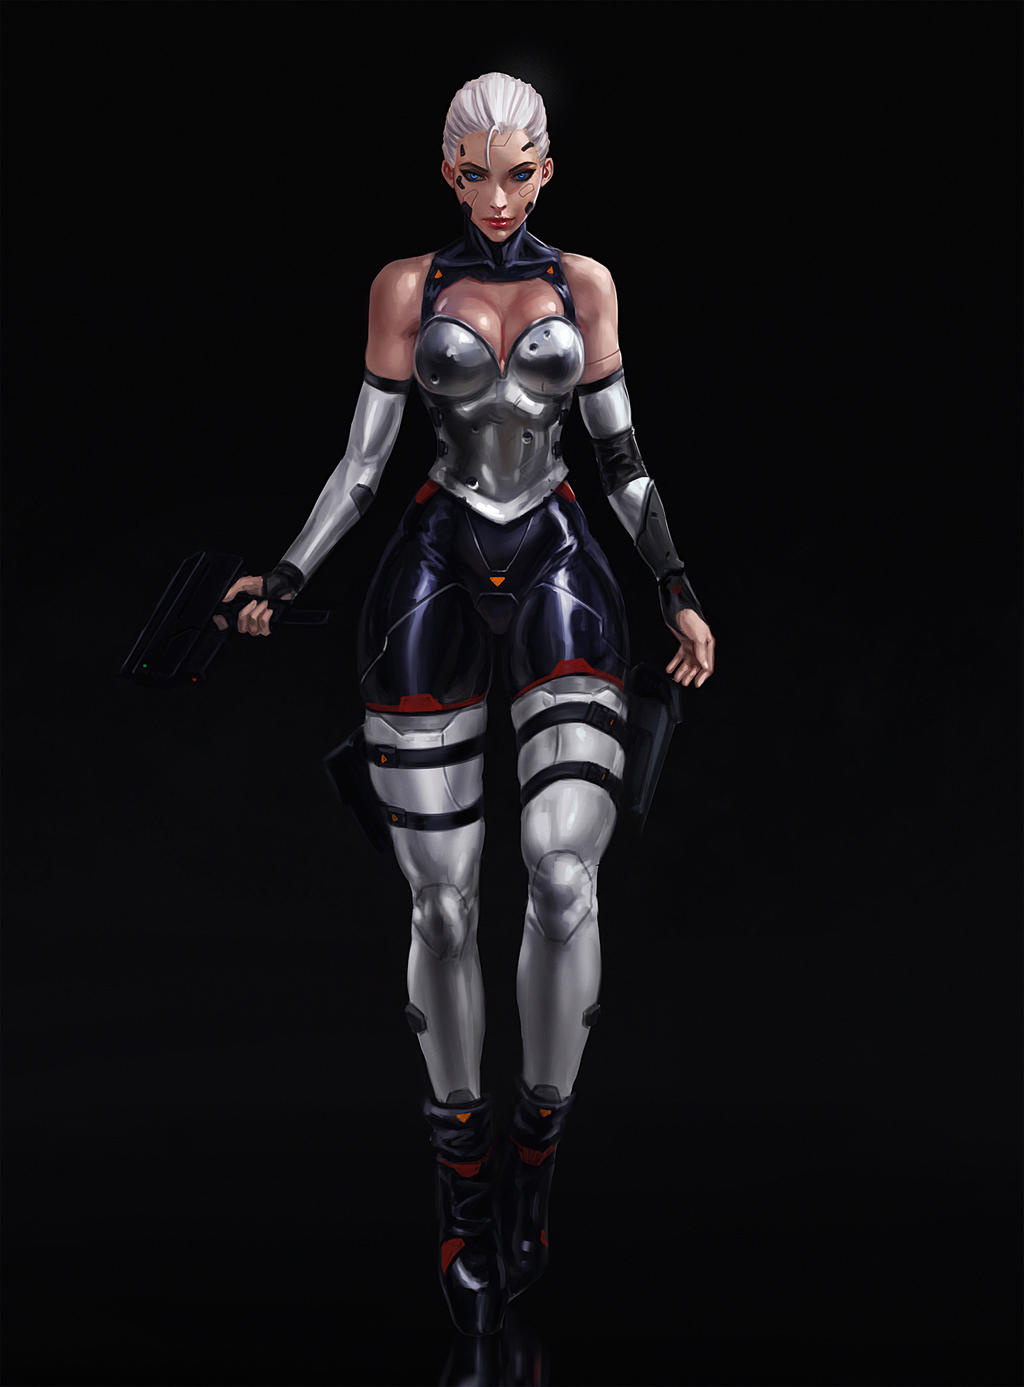 Cyberpunk Assassin by SalvadorTrakal